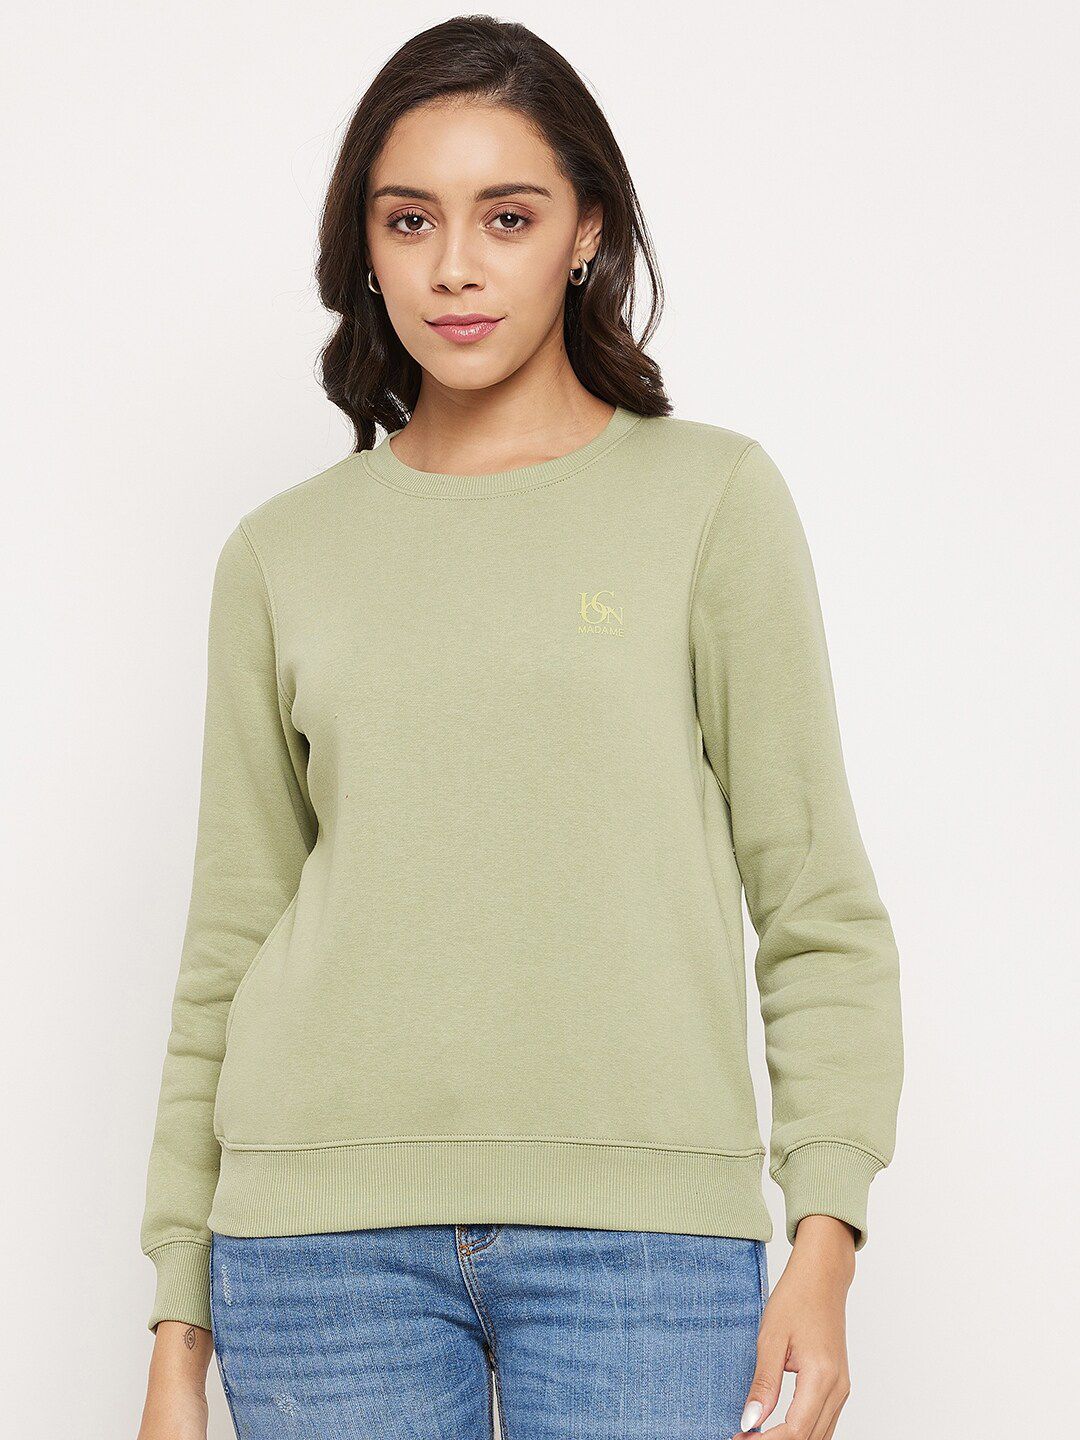 Madame Women Green Solid Fleece Sweatshirt Price in India